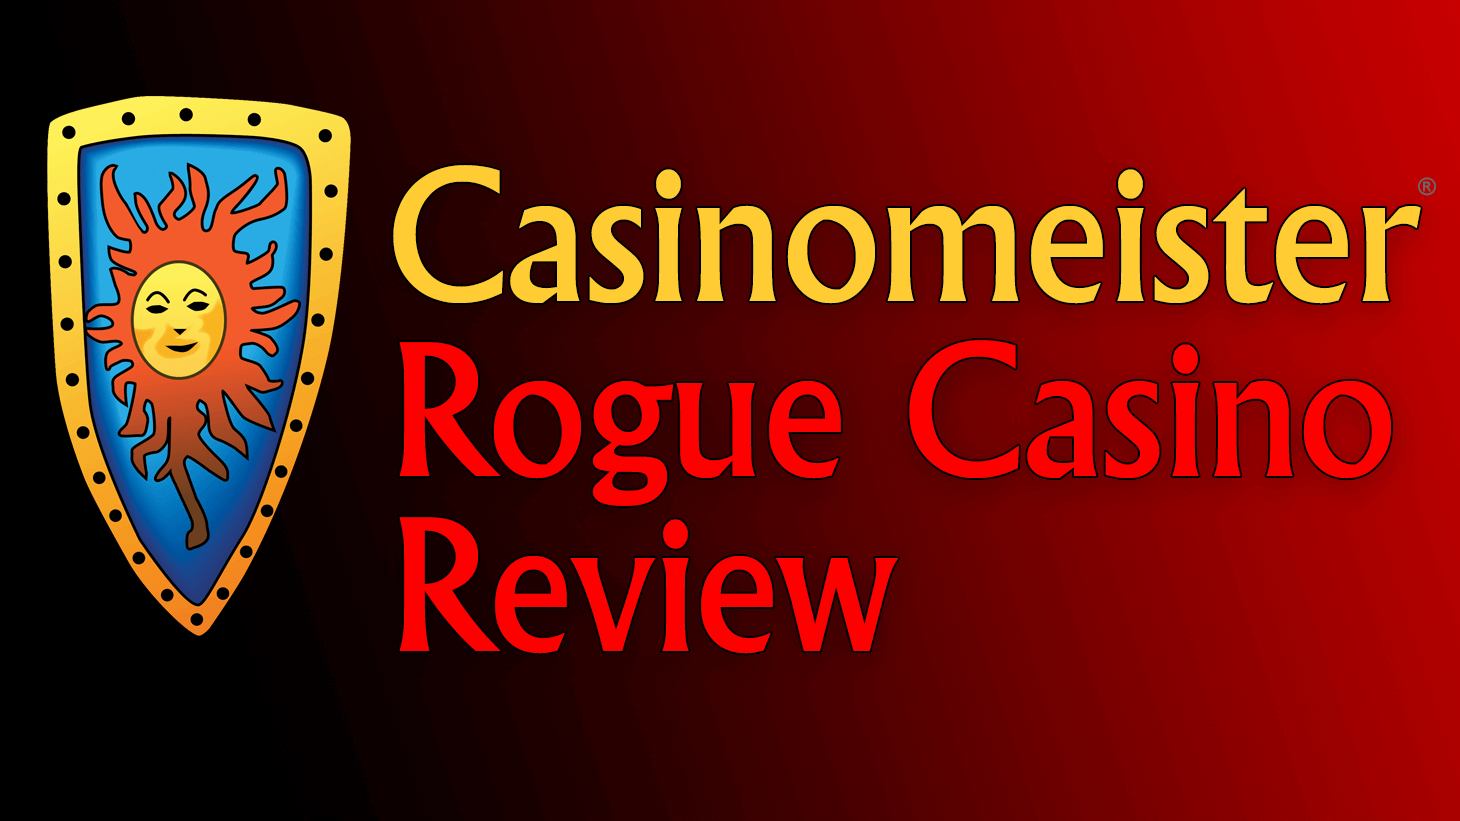 www.casinomeister.com